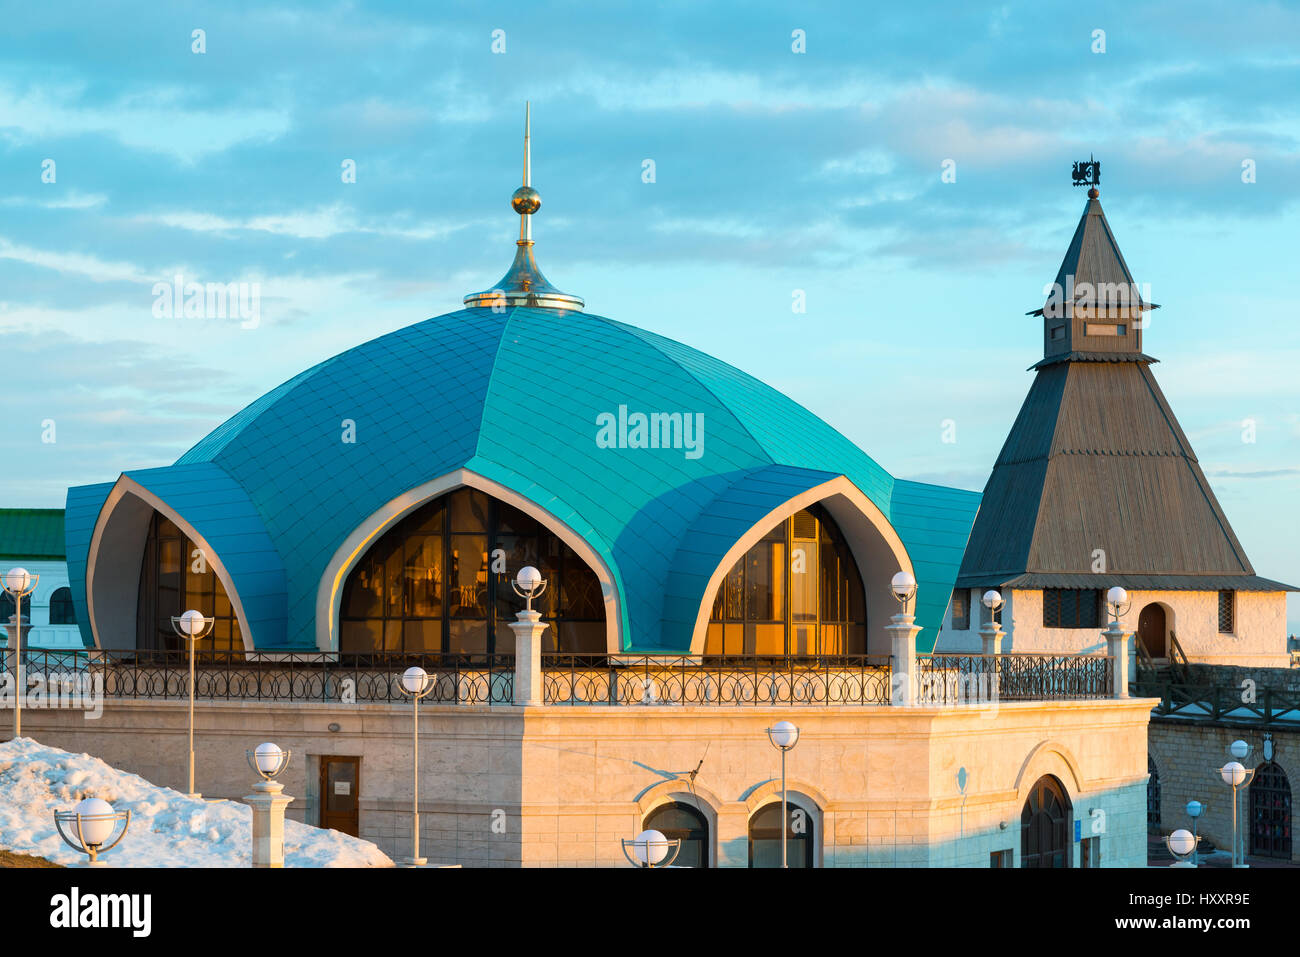 Service pavilion on territory of Kazan Kremlin in Tatarstan, Russia Stock Photo